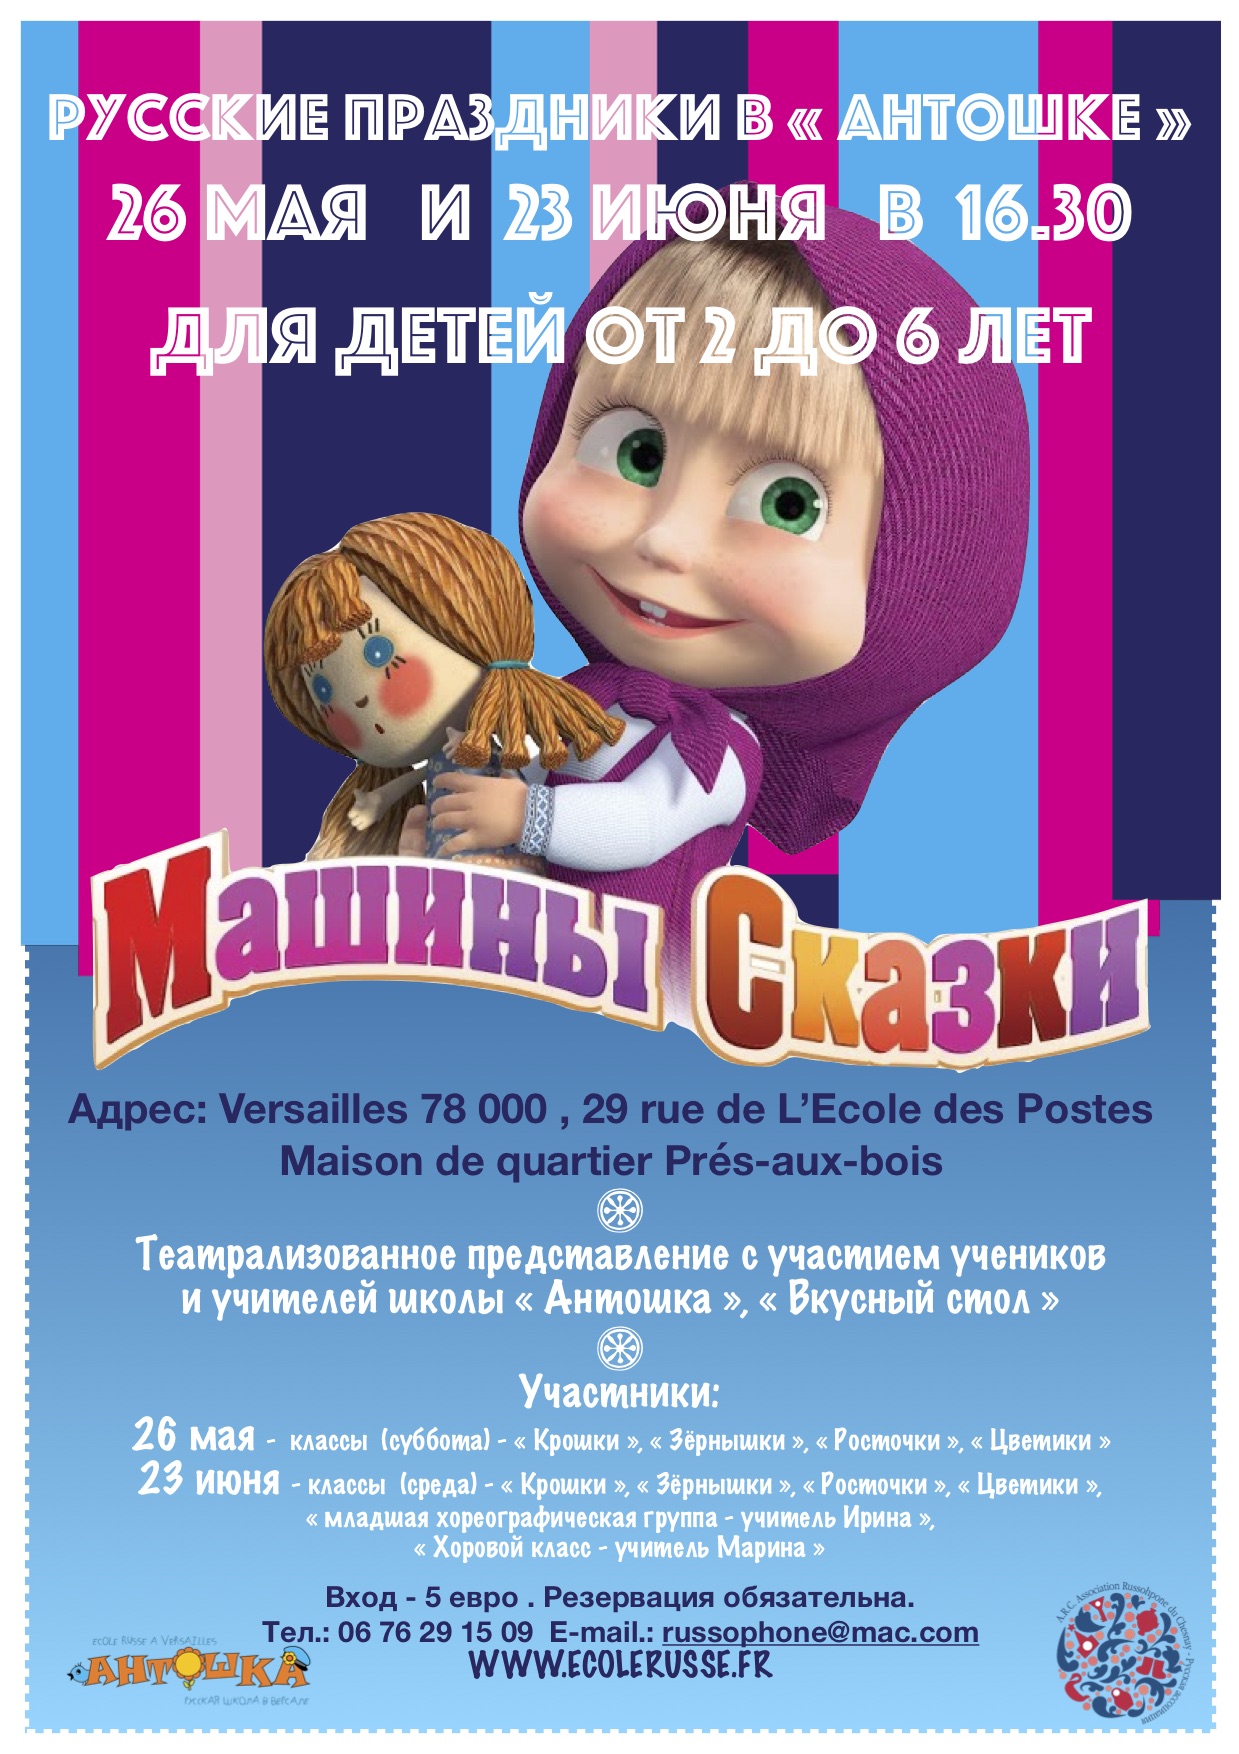 You are currently viewing РУССКИЕ праздники в « Антошке » 26 мая   и  23 июня   в  16.30 для детей от 2 до 6 лет « МАШИНЫ СКАЗКИ »